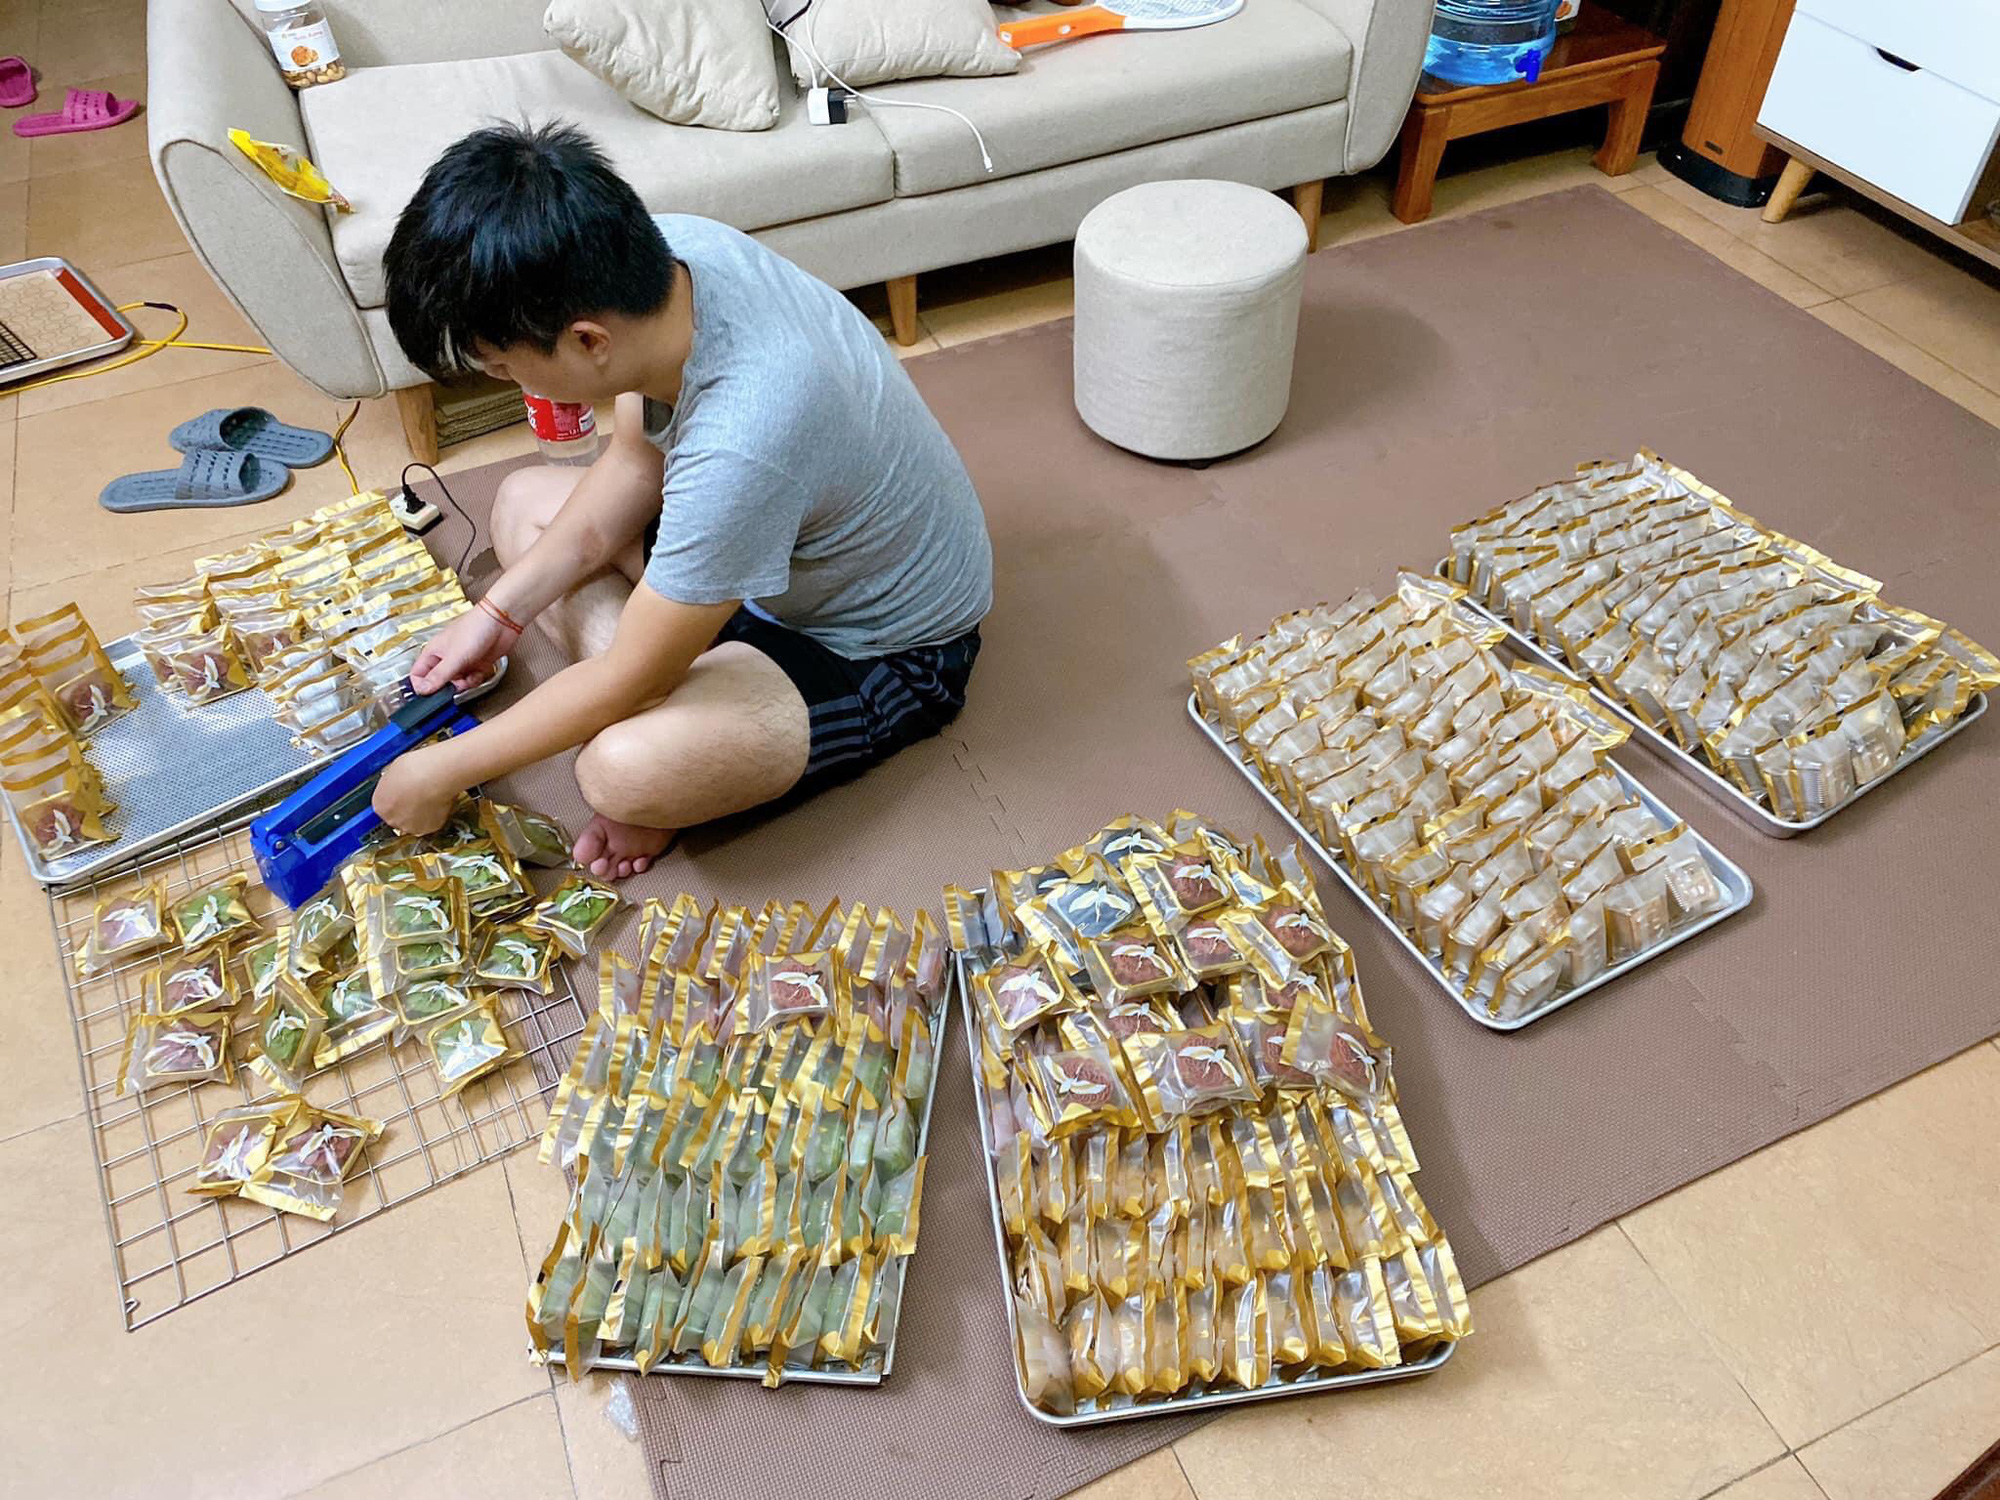 Bánh Trung thu handmade chật vật xoay xở trong dịch ở Hà Nội - Ảnh 2.